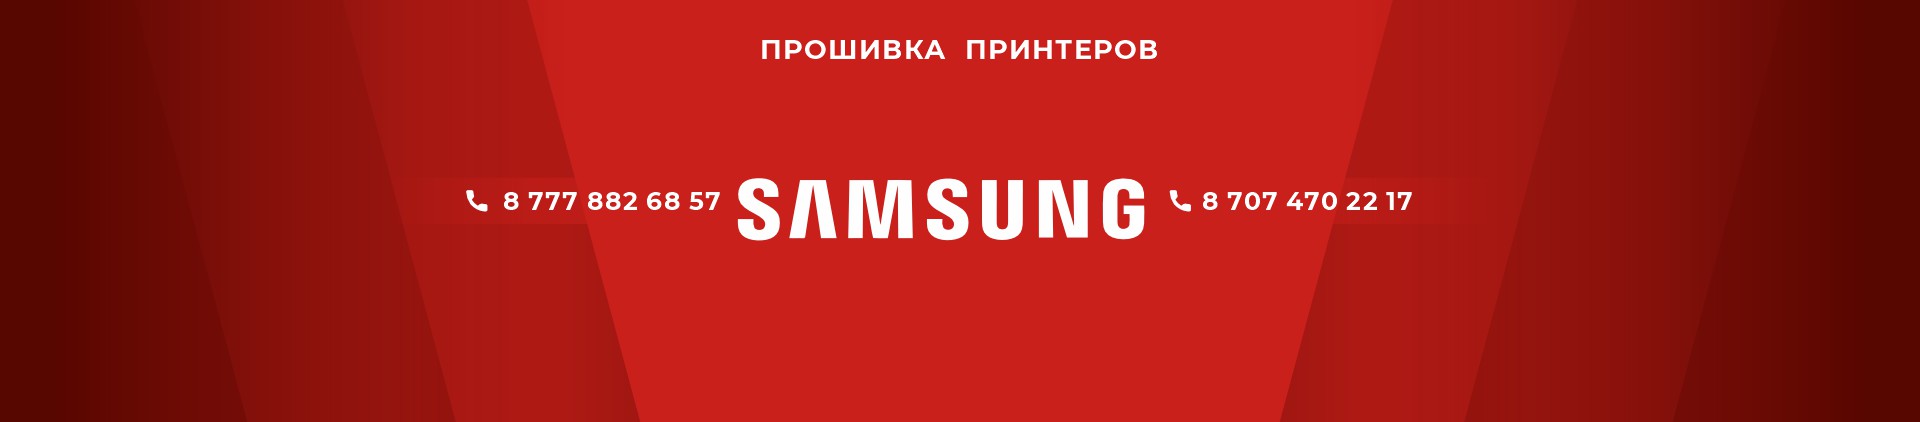 прошивка принтеров Samsung